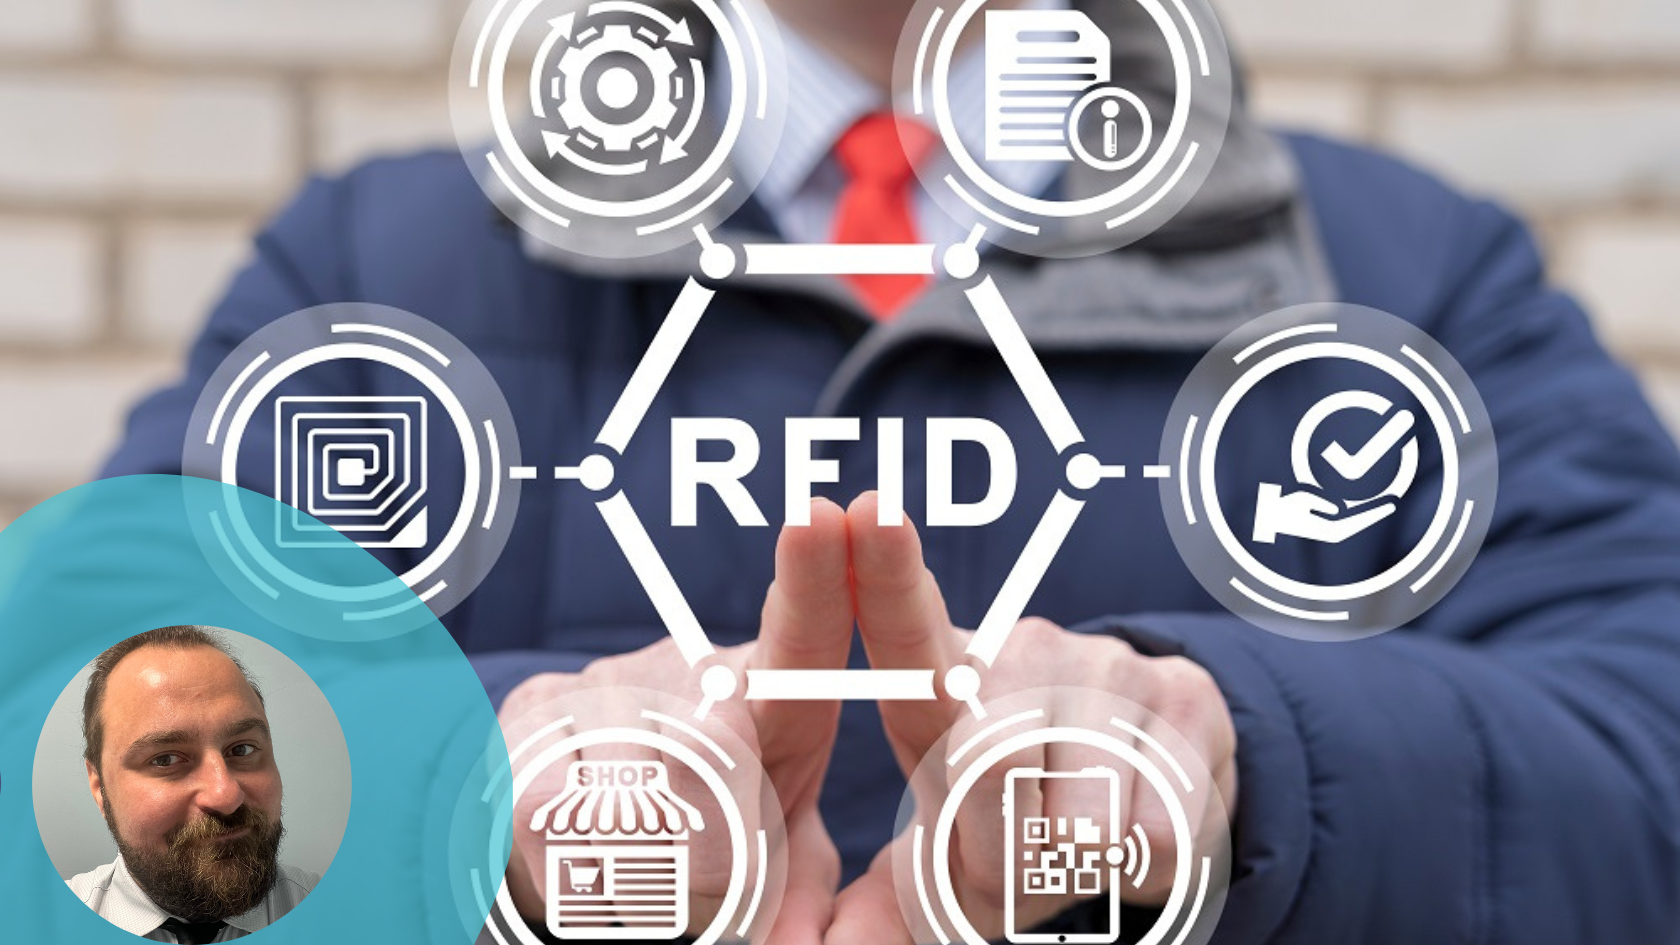 綠色 RFID 技術的全球影響力和永續影響